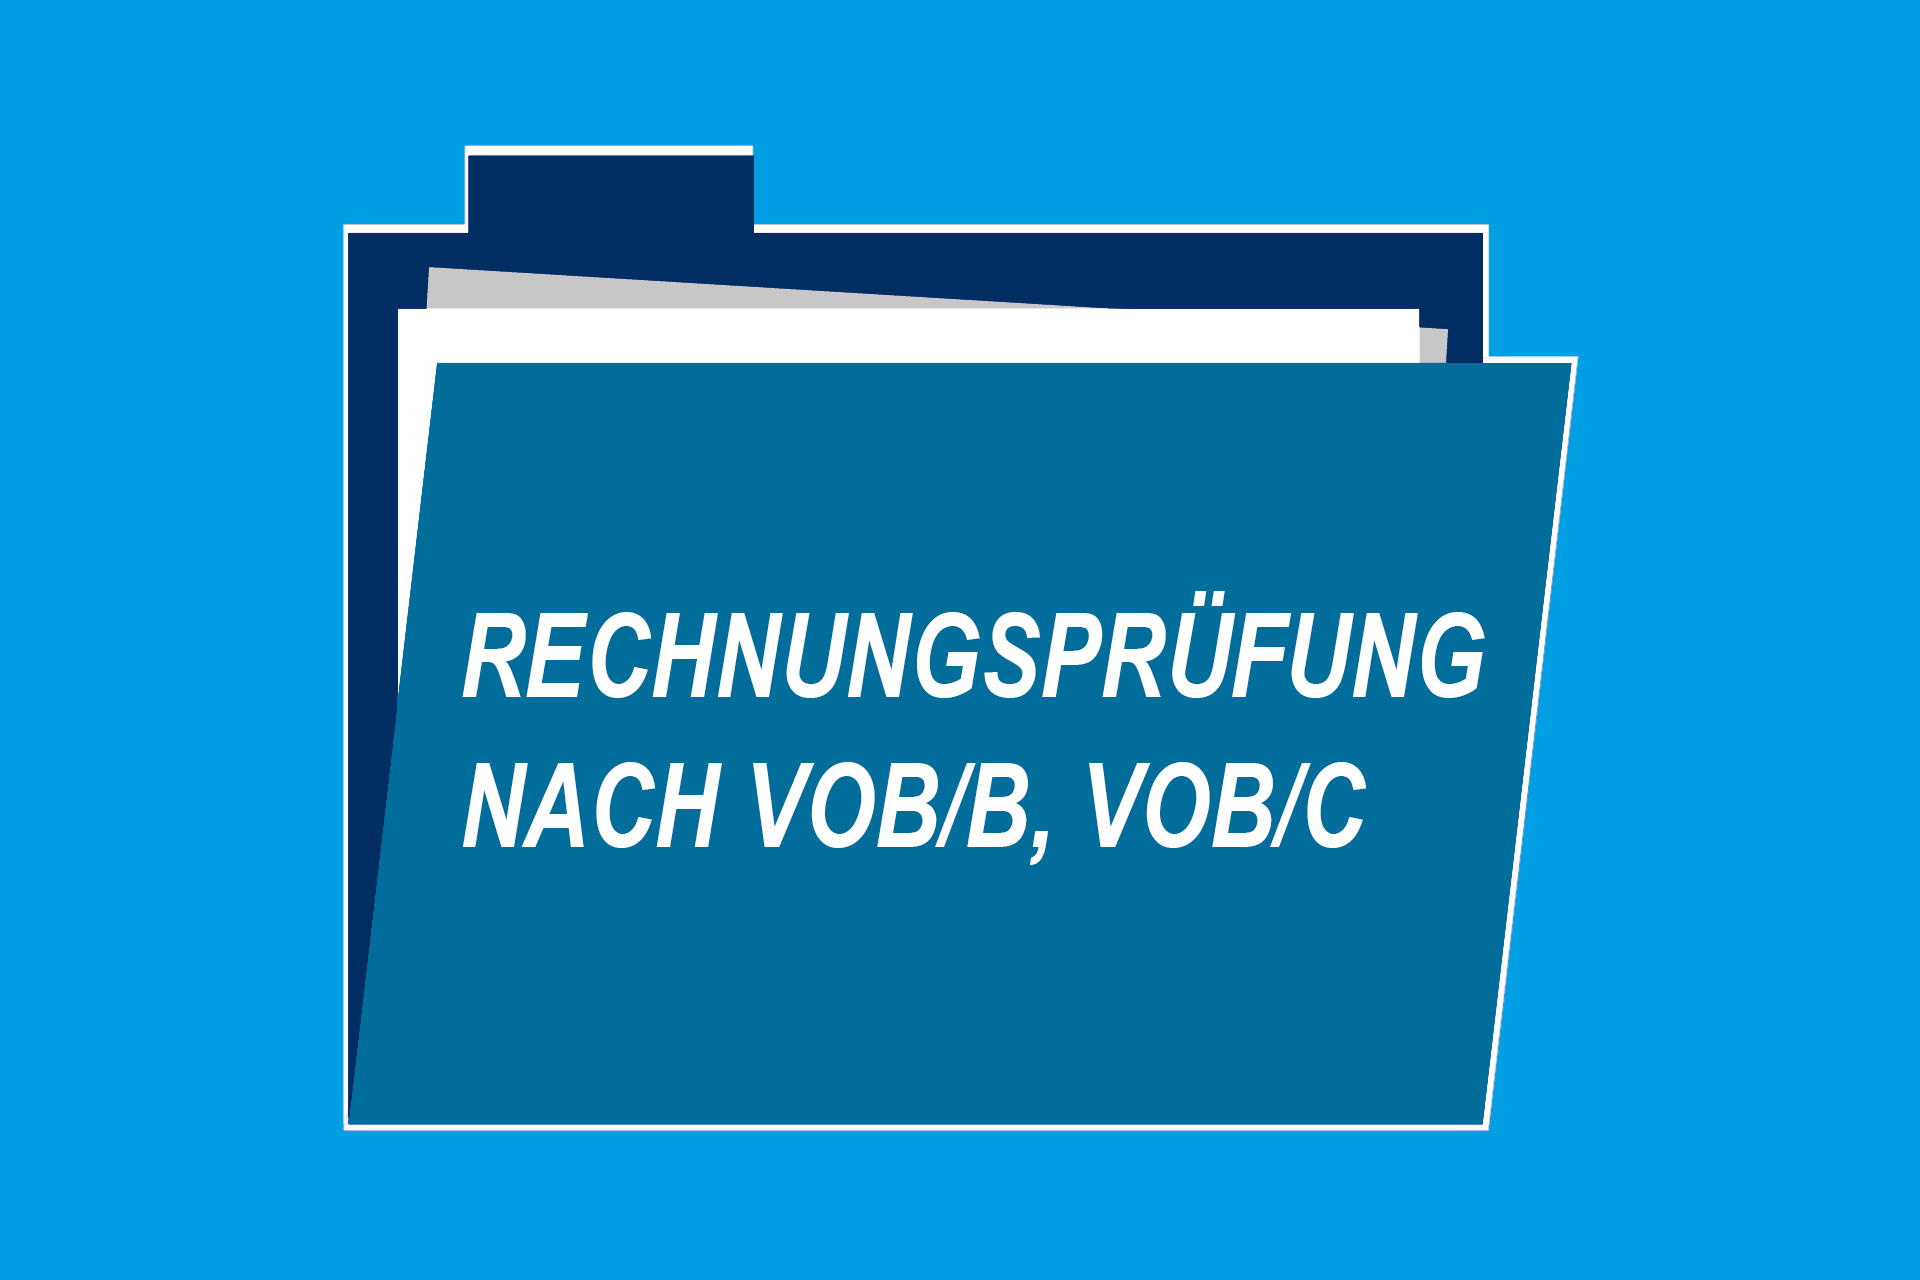 Rechnungsprüfung nach VOB/B, VOB/C  – Notwendige Kenntnisse und Praxistipps zur Vorgehensweise bei der Abrechnungsprüfung von Bauleistungen (Online-Seminar)